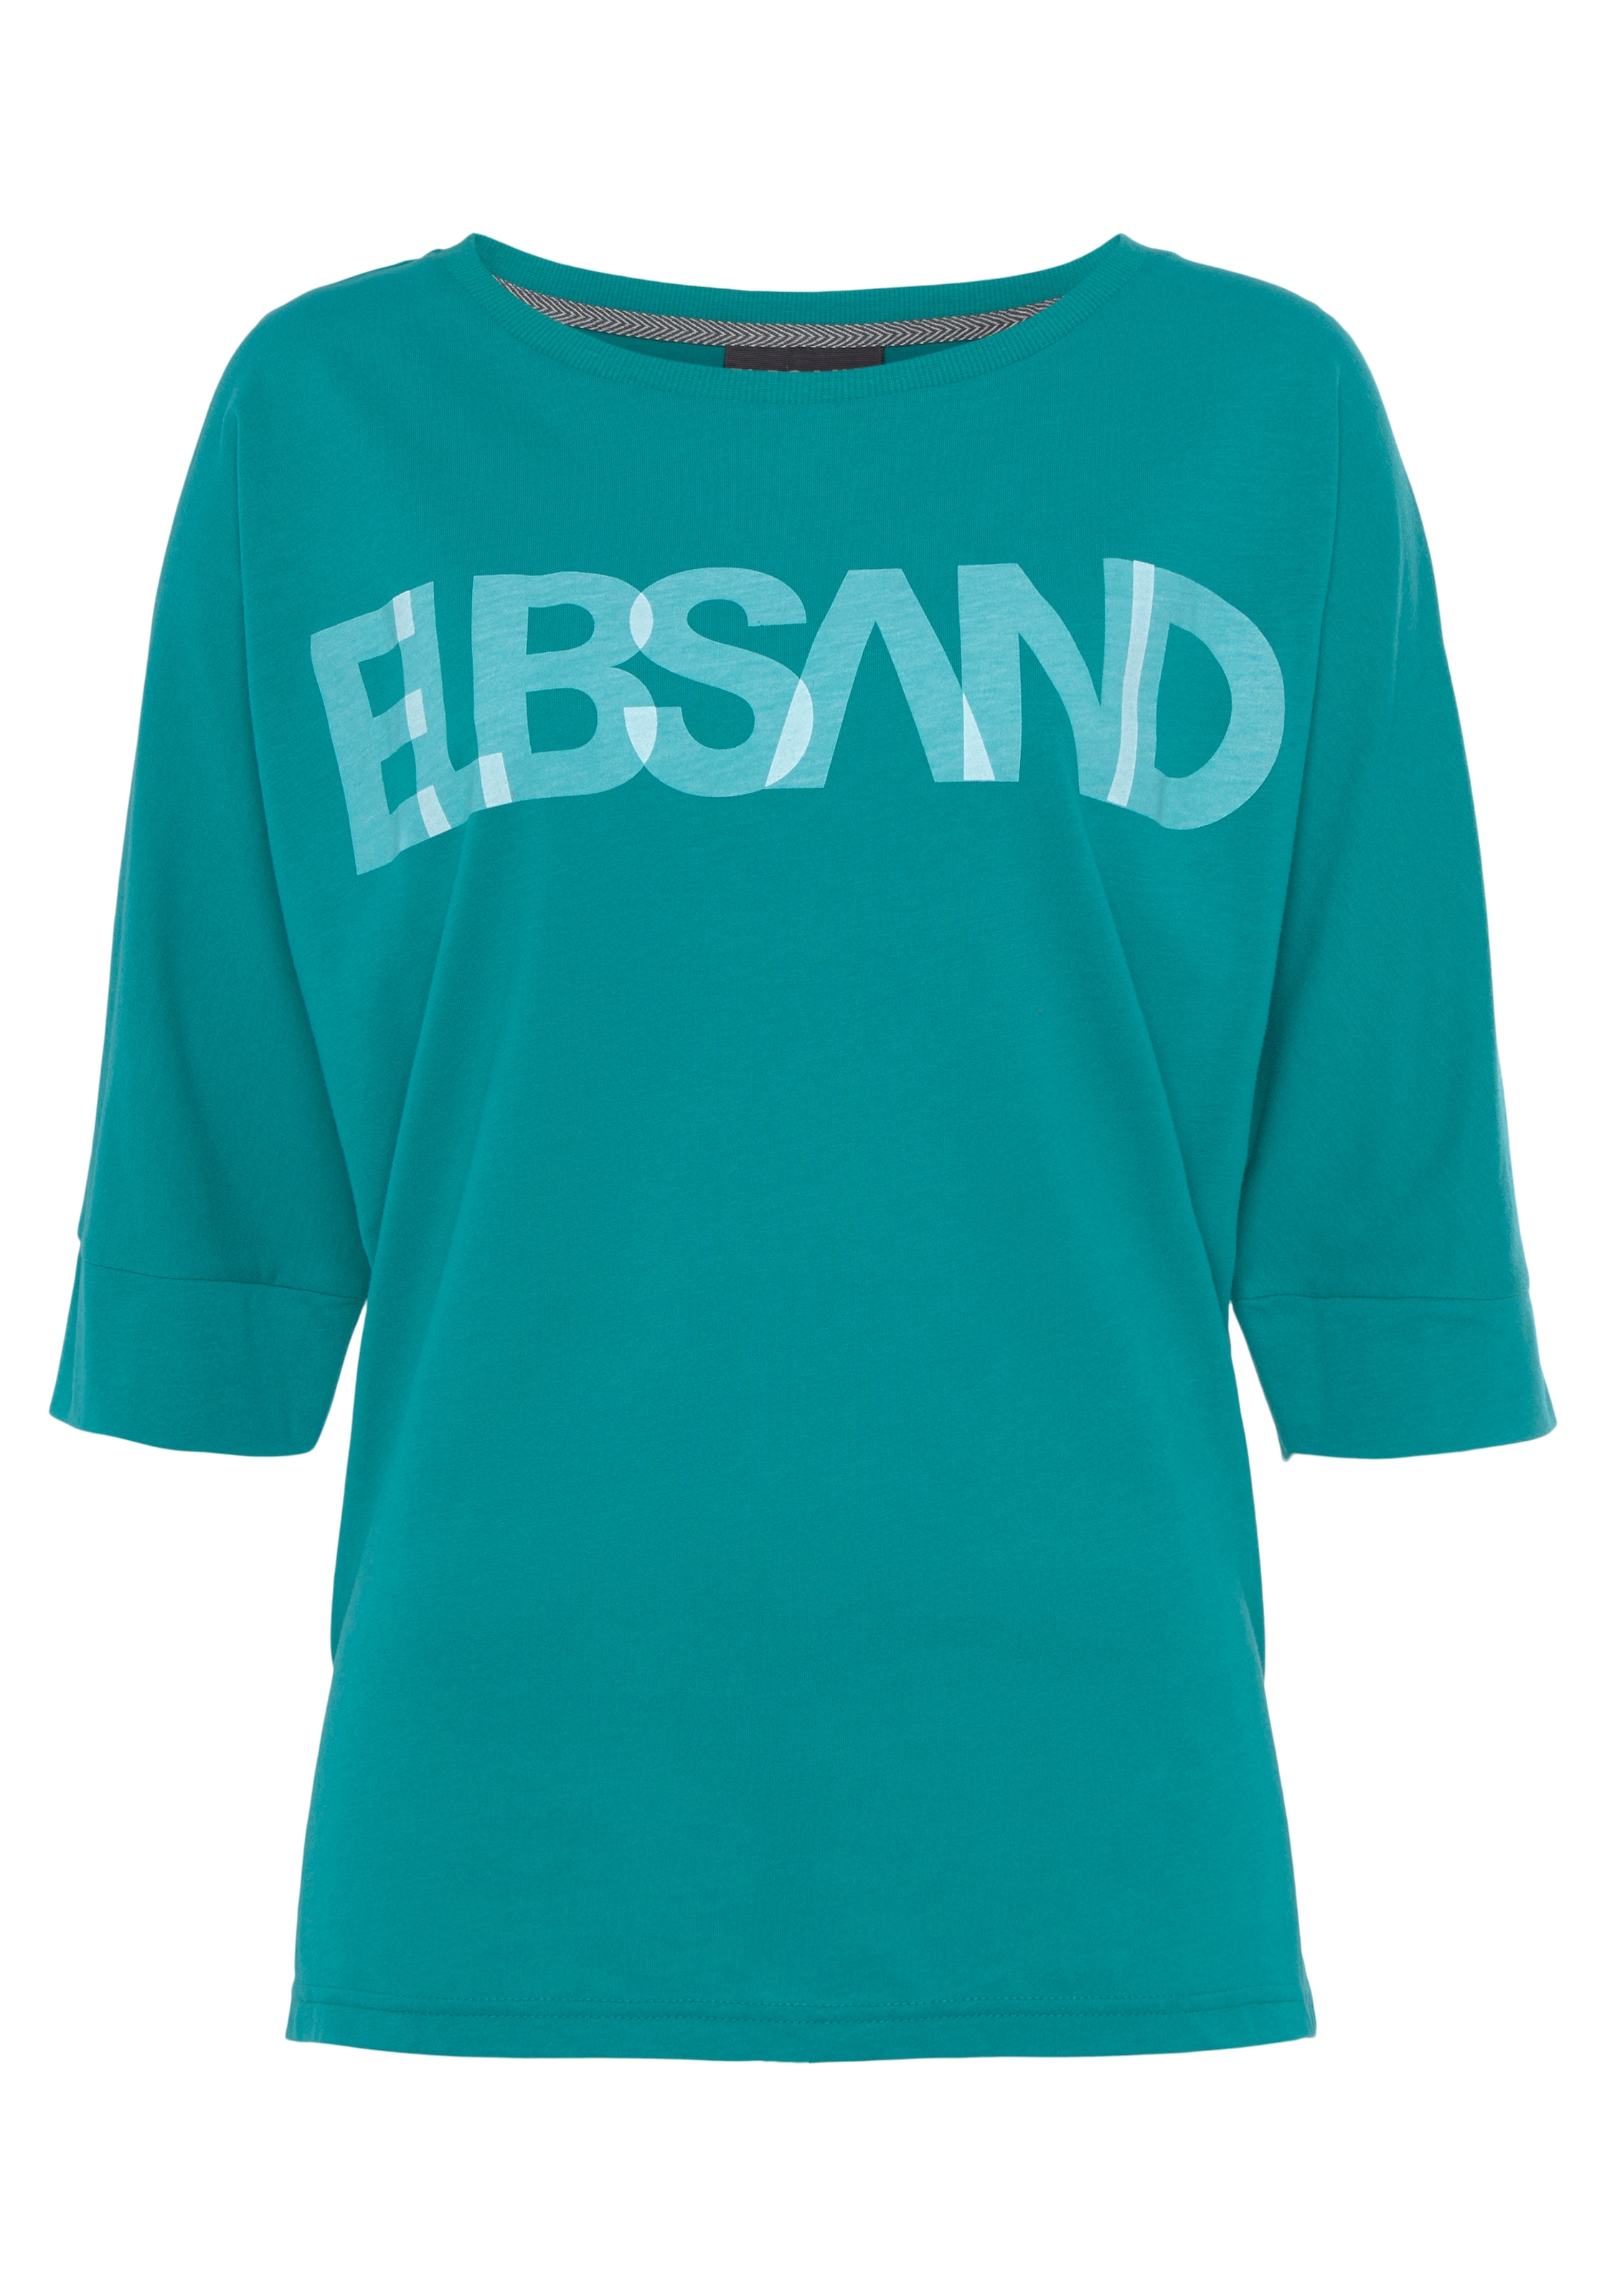 Passform bestellen Logodruck, Elbsand lockere OTTO Shop im Baumwoll-Mix, 3/4-Arm-Shirt, mit Online